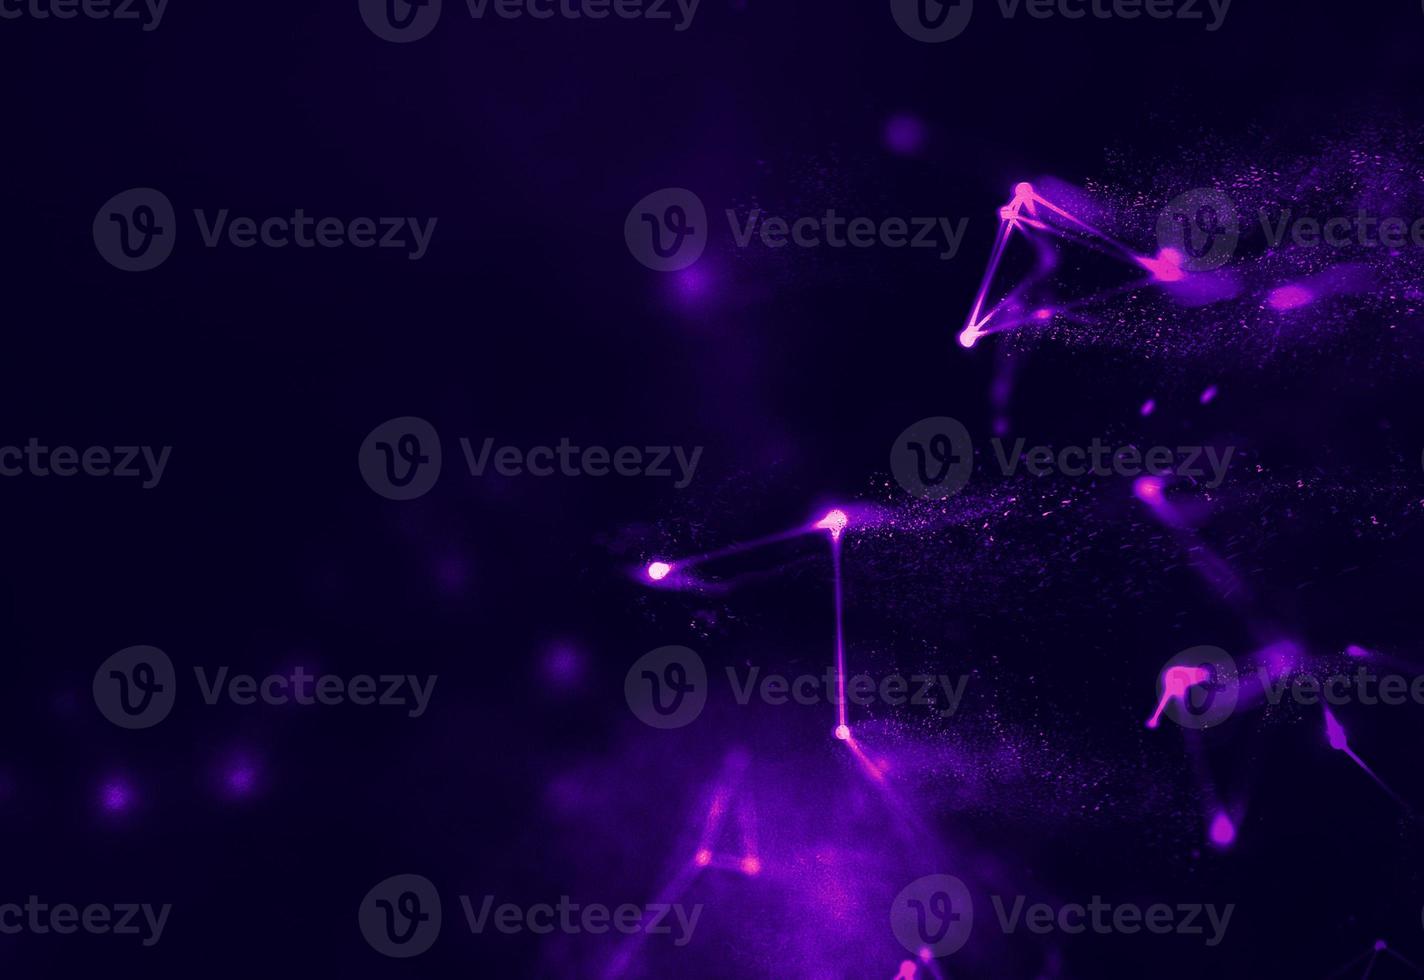 Ultravioletter Galaxienhintergrund. raum hintergrund illustration universum mit nebel. 2018 lila Technologiehintergrund. Konzept der künstlichen Intelligenz foto